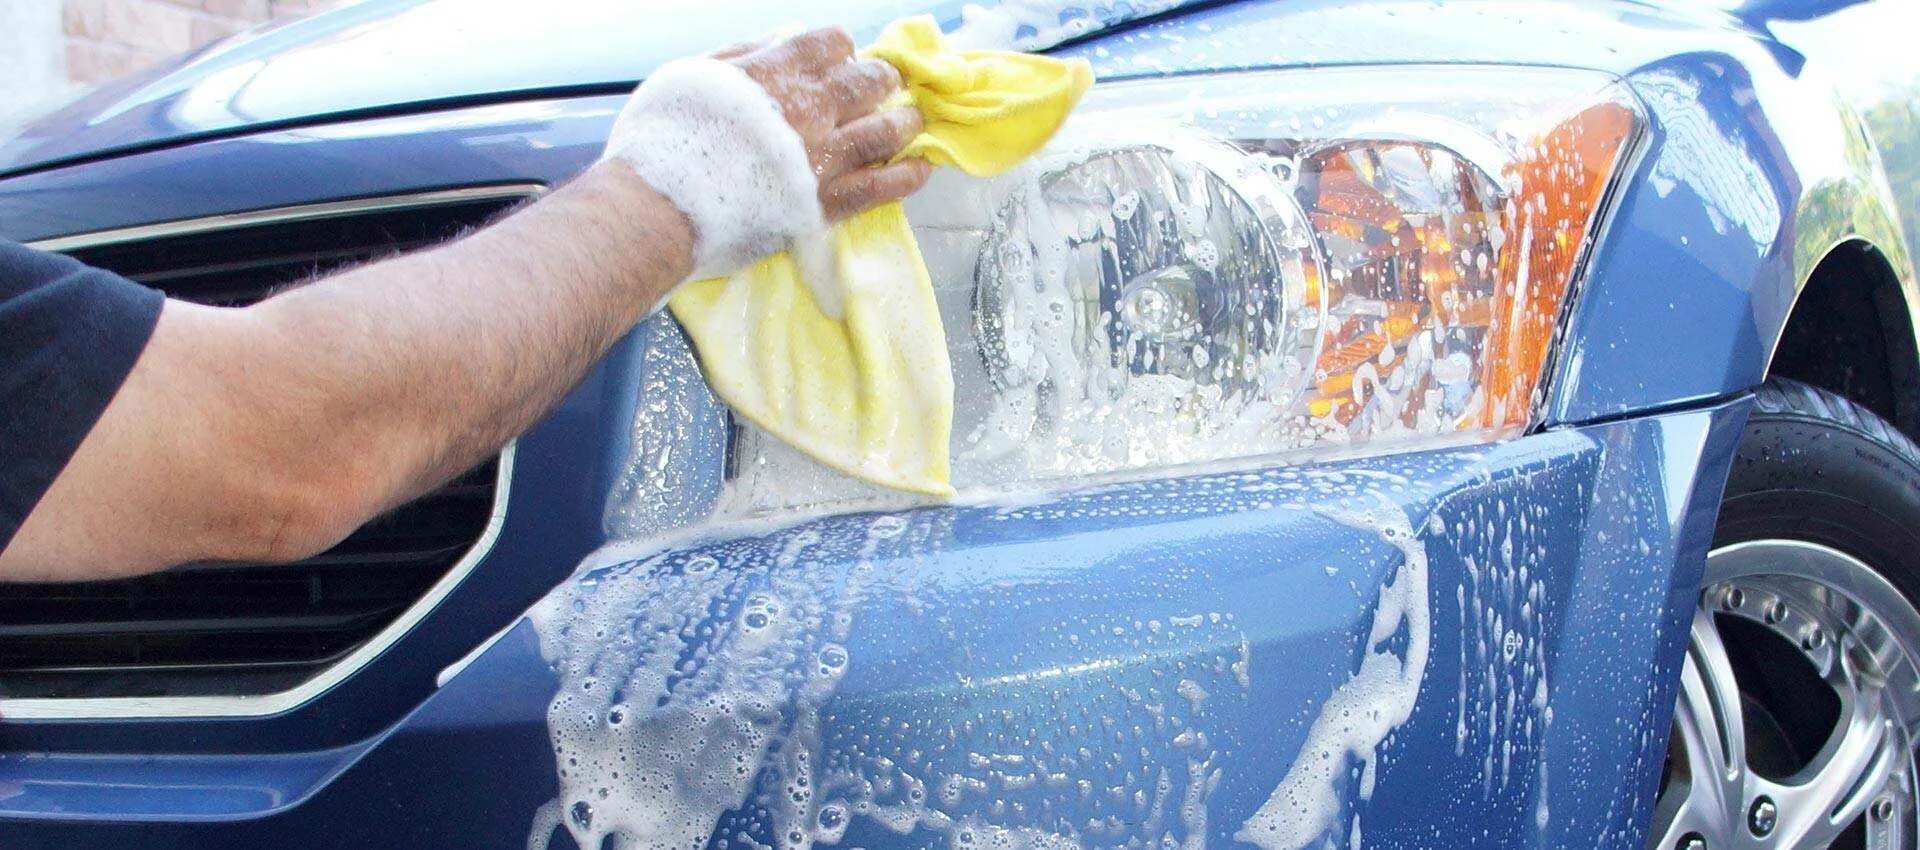 Можно мыть машину на своем участке. Car Wash автомойка. Губка для мойки автомобиля. Мытье автомобиля. Самостоятельная мойка автомобиля.